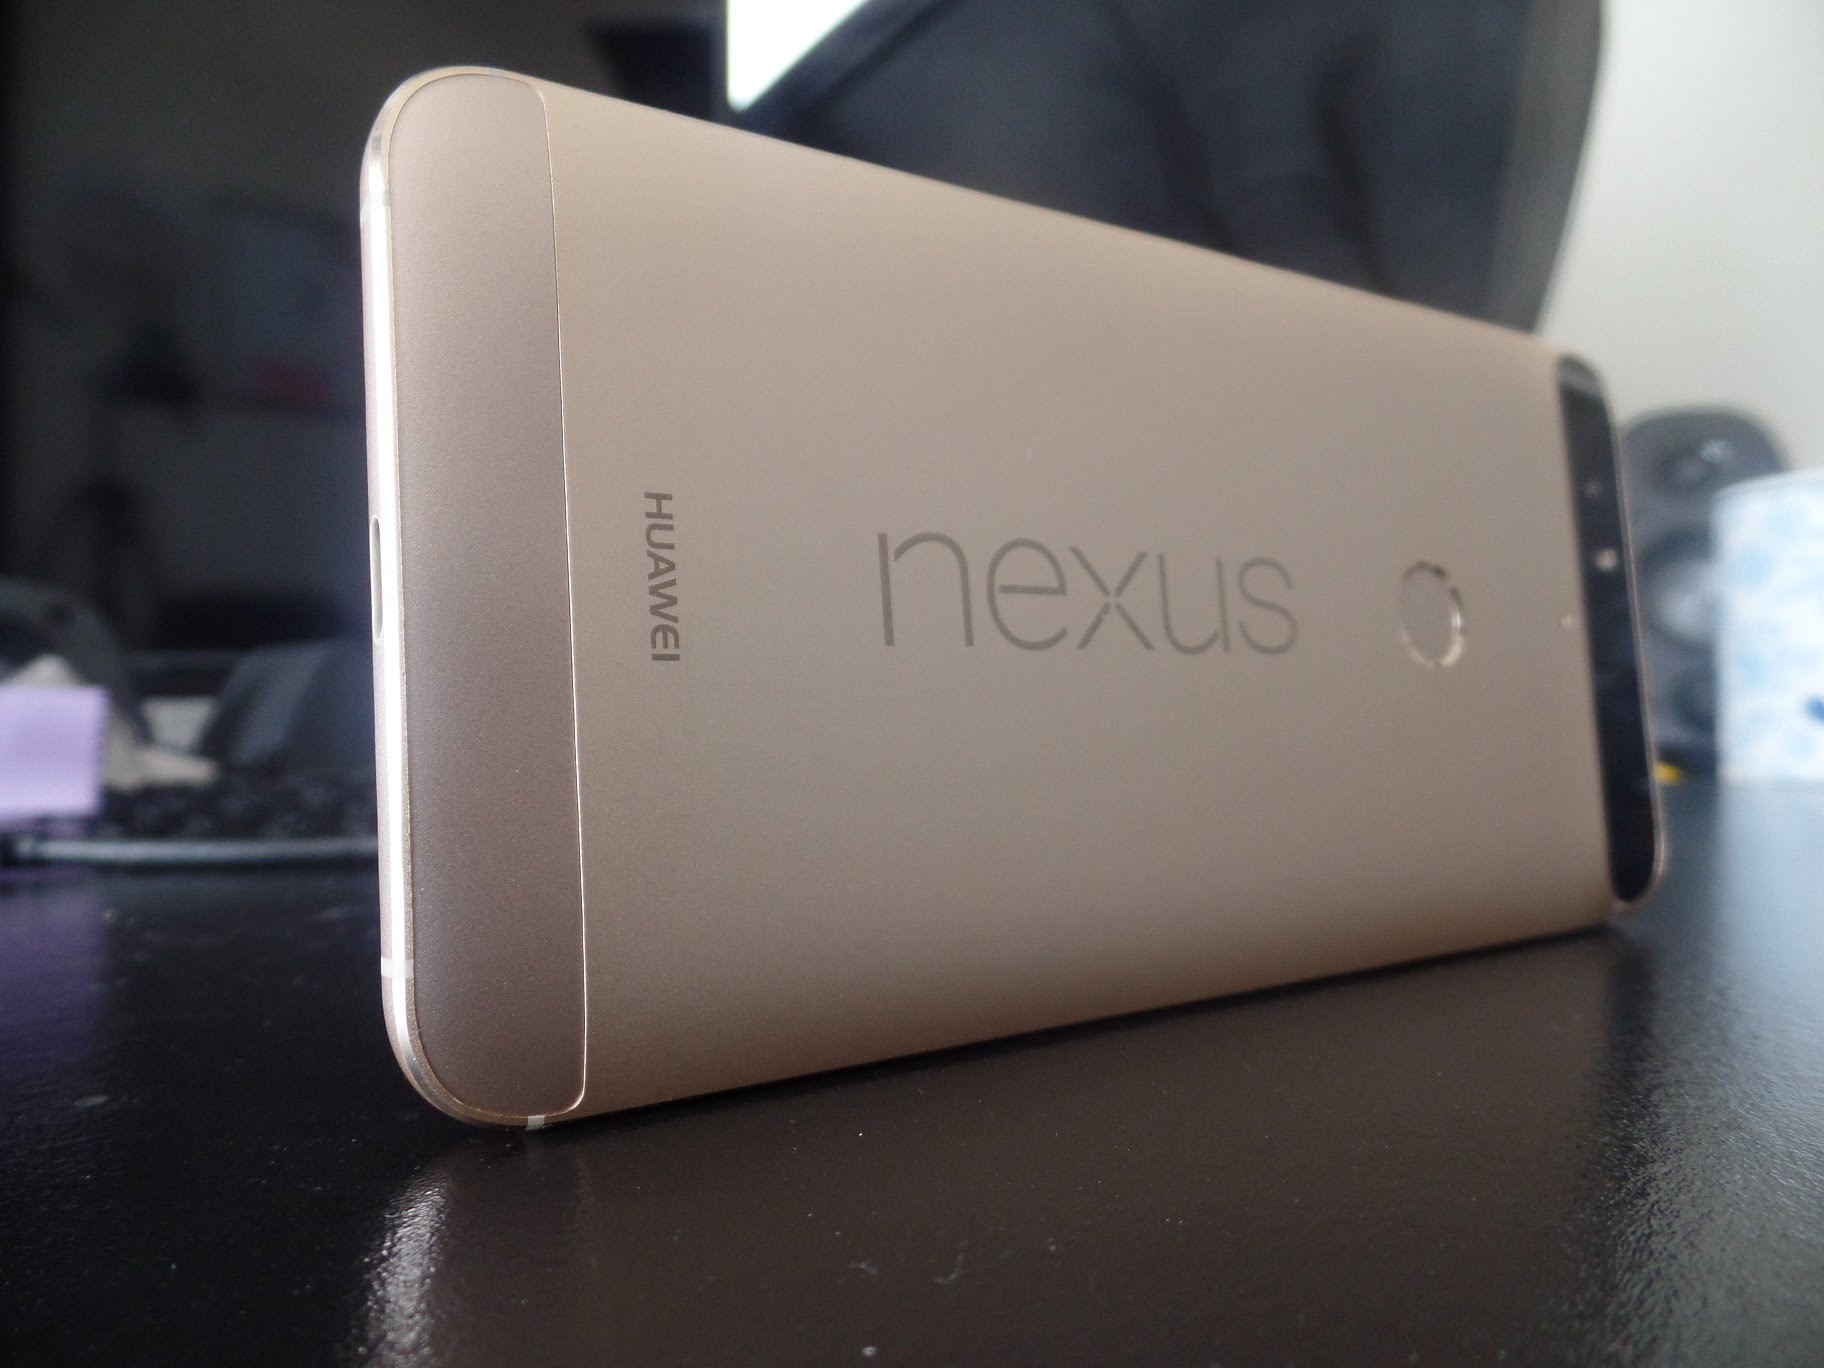 Huawei Nexus 6P deal - $360 on Best Buy and eBay